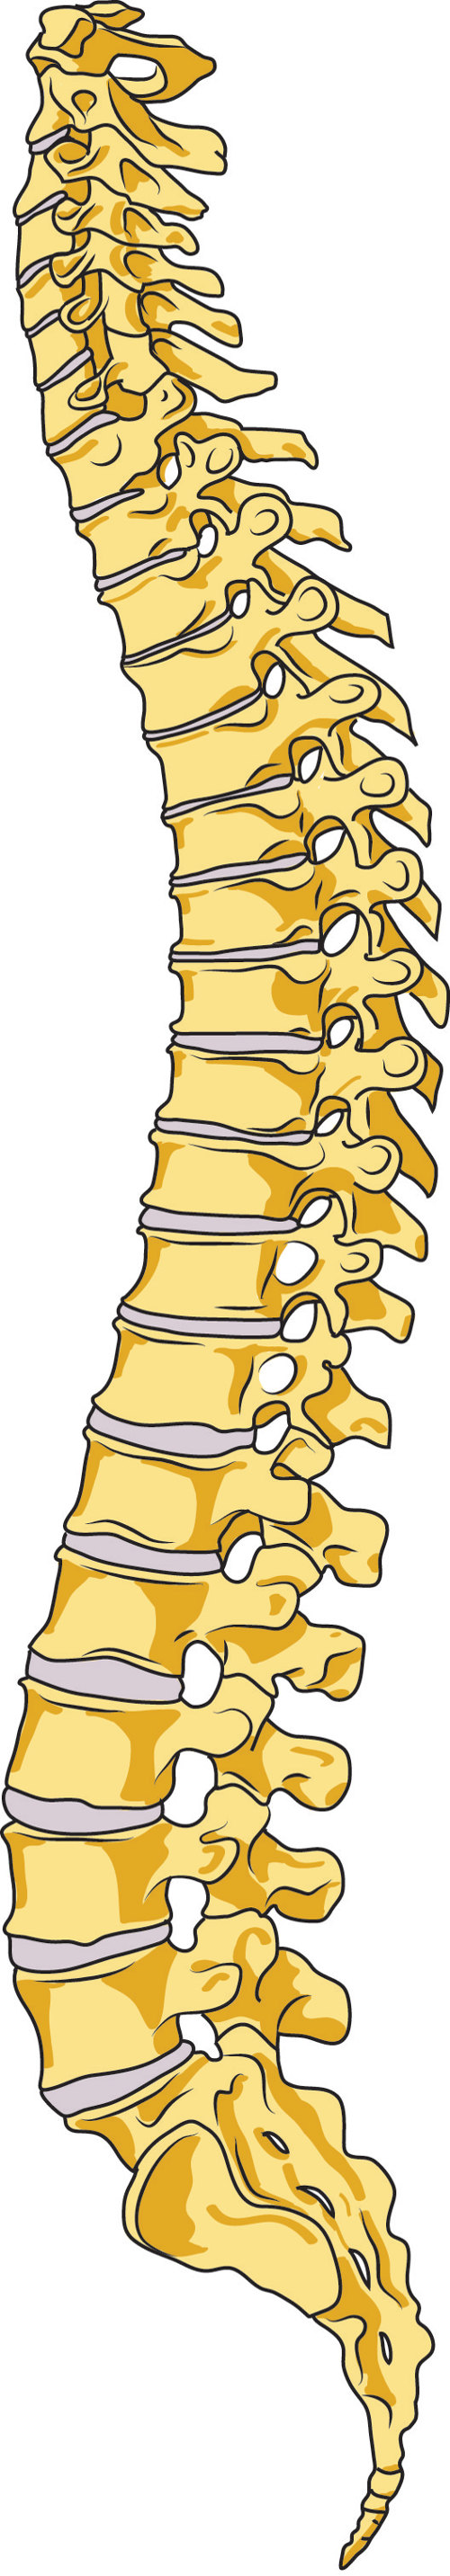 emberi gerinc nyaki gerinc)